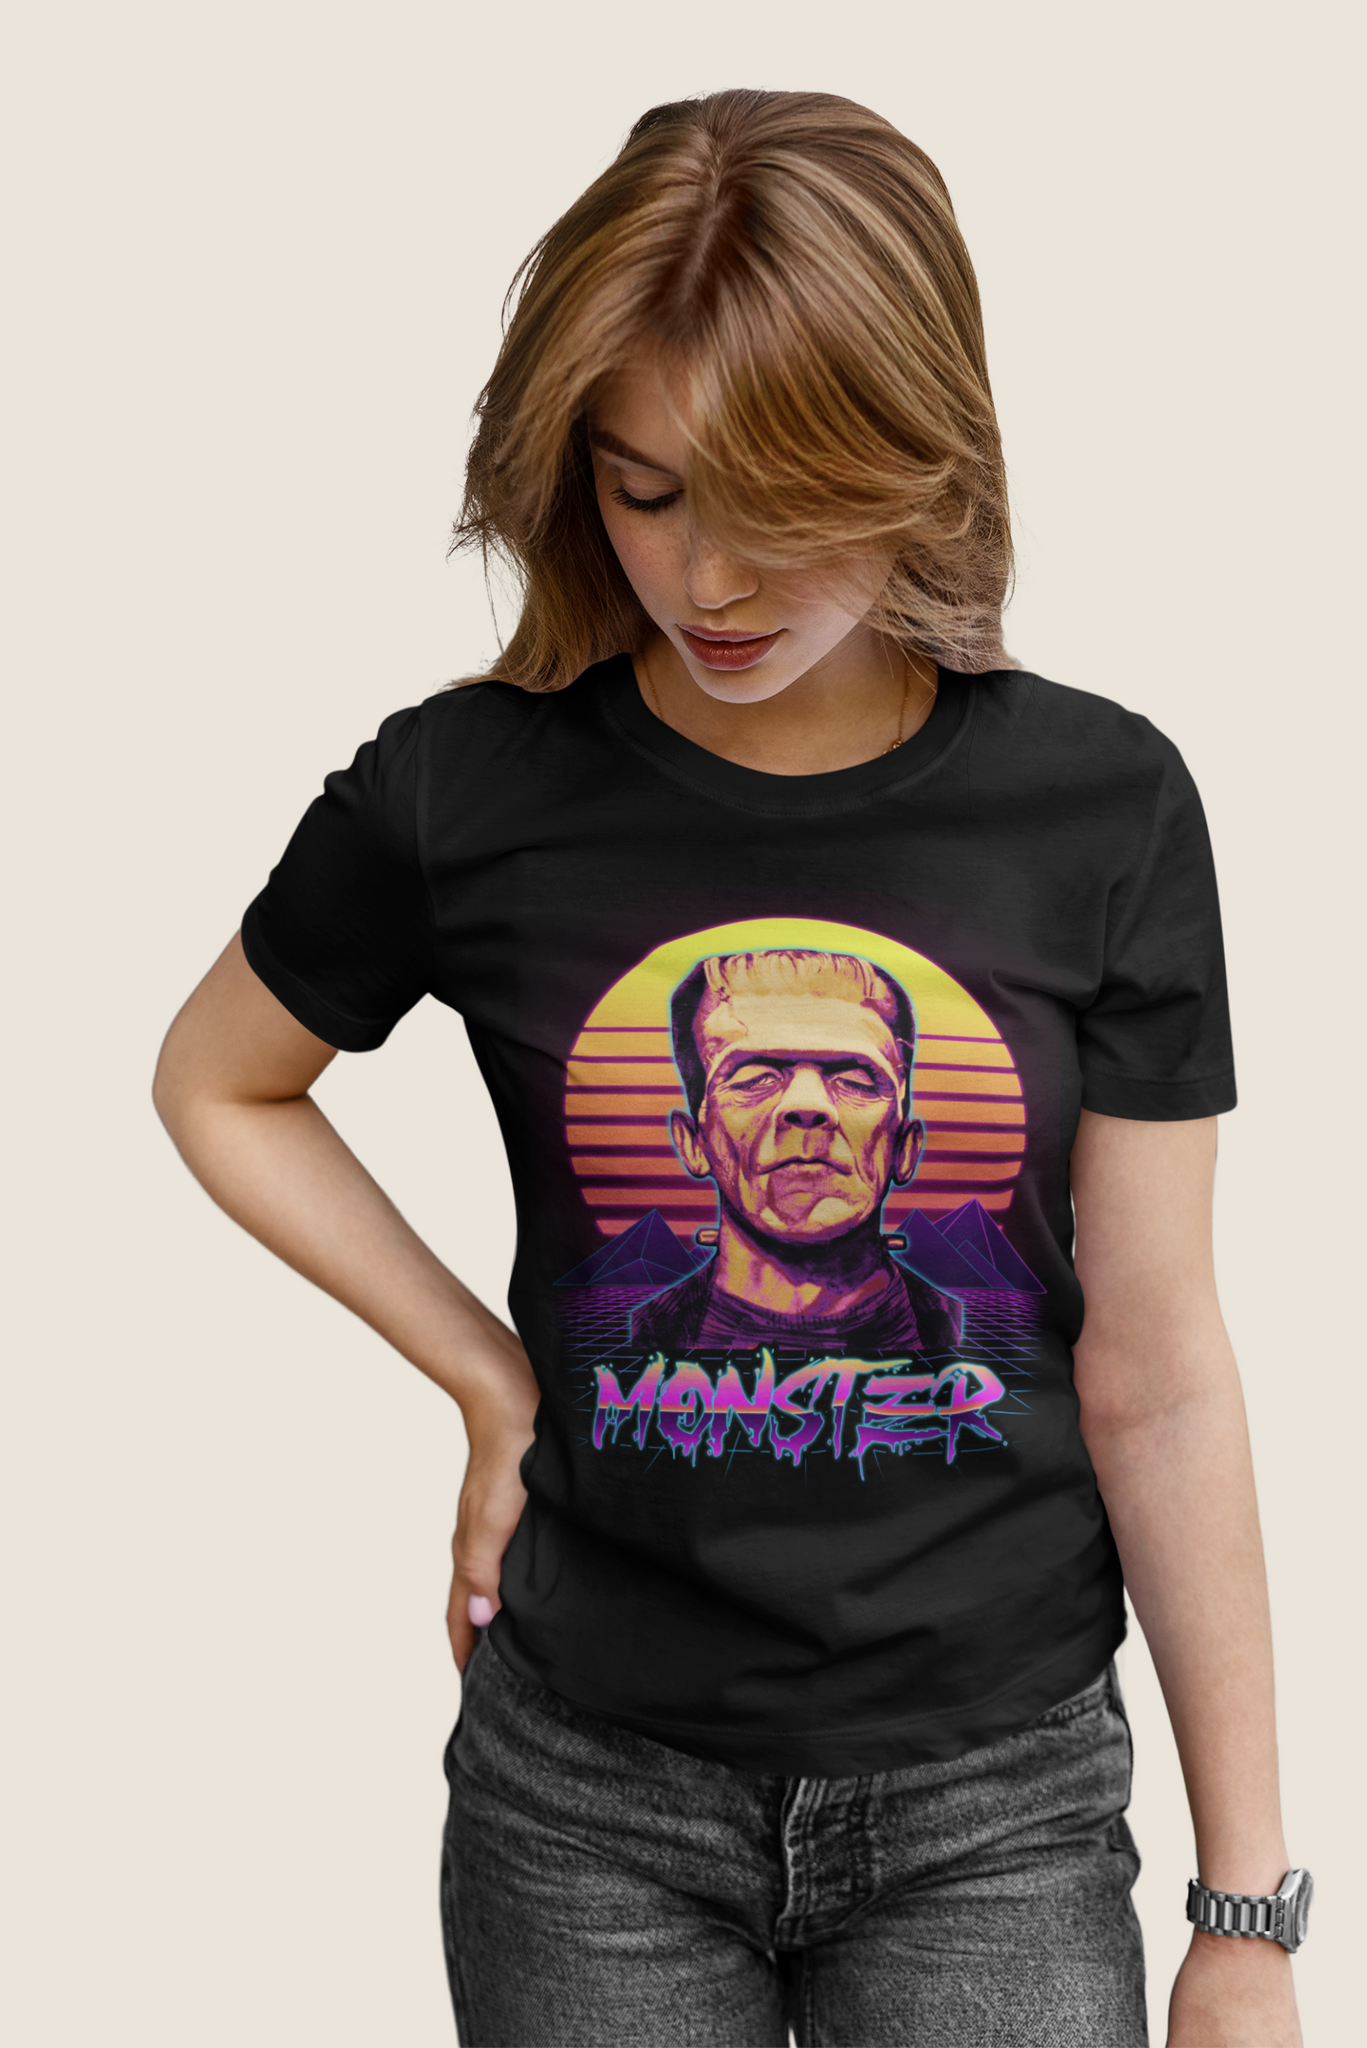 Frankenstein Retro T Shirt, Monster Tshirt, The Monster T Shirt, Halloween Gifts